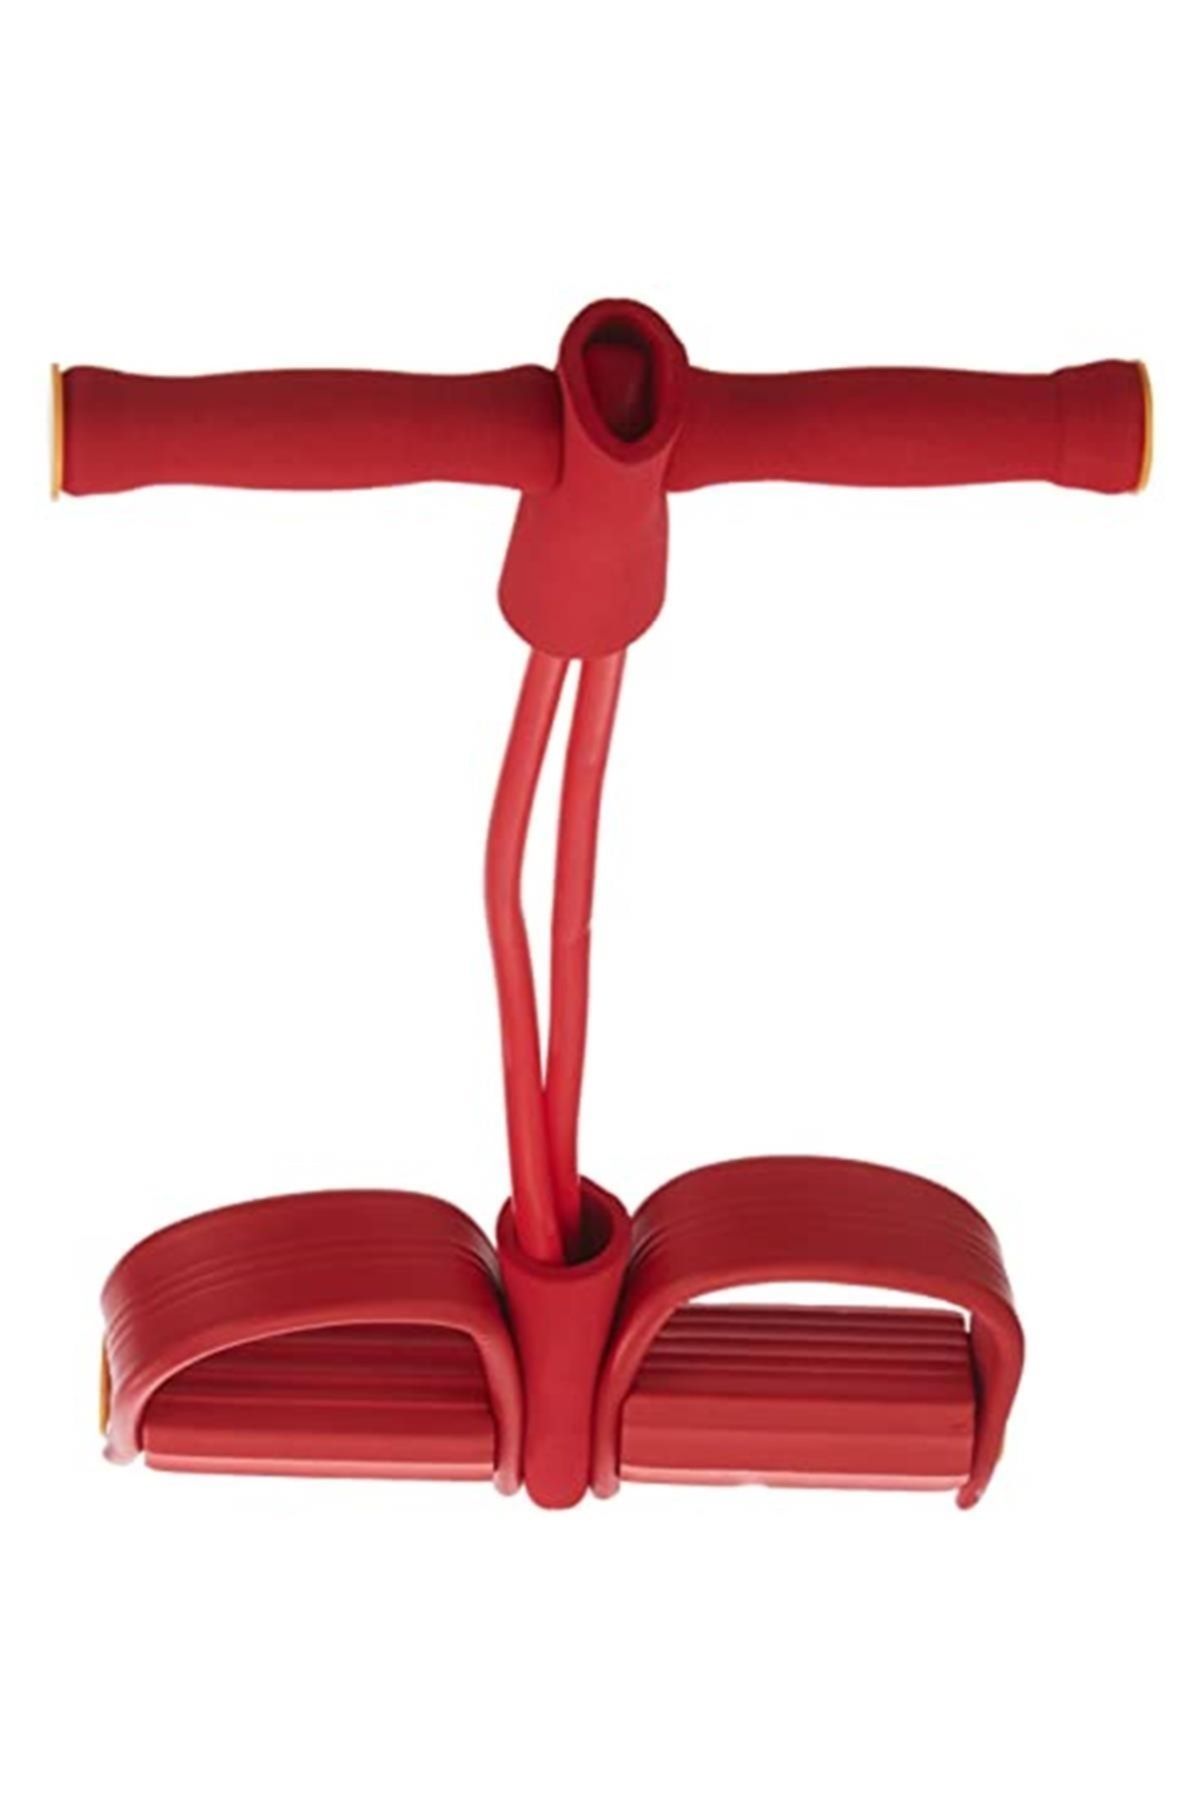 Avessa Marka: Body Trimmer Direnç Lastiği Jimnastik Aleti Kırmızı Kategori: Top